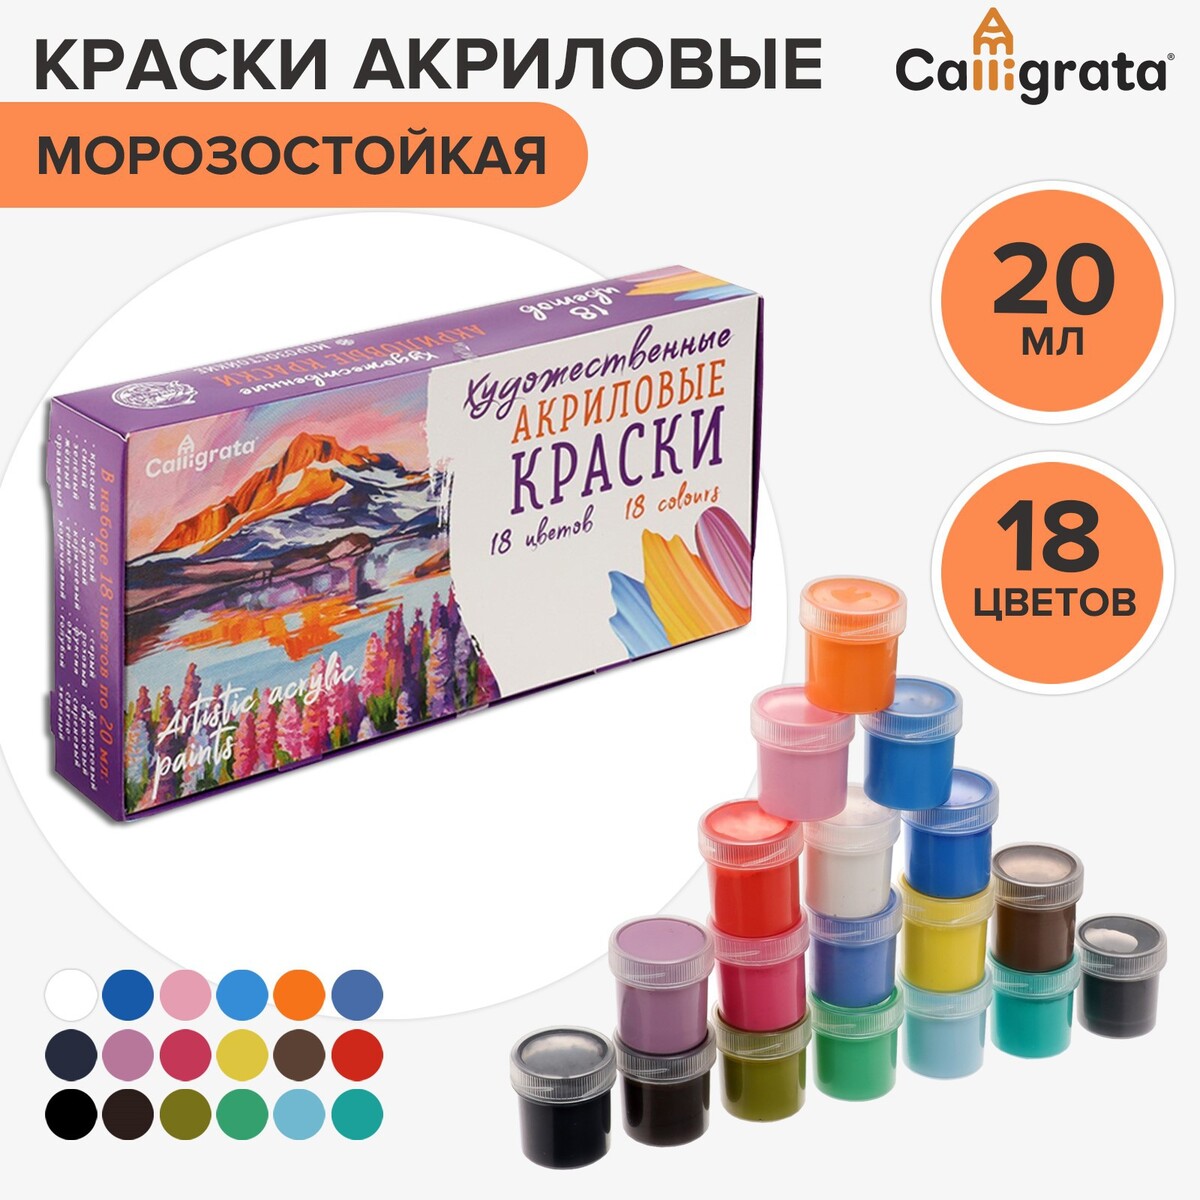 Краска акриловая, набор 18 цветов х 20 мл, calligrata художественная, морозостойкая, в картонной коробке